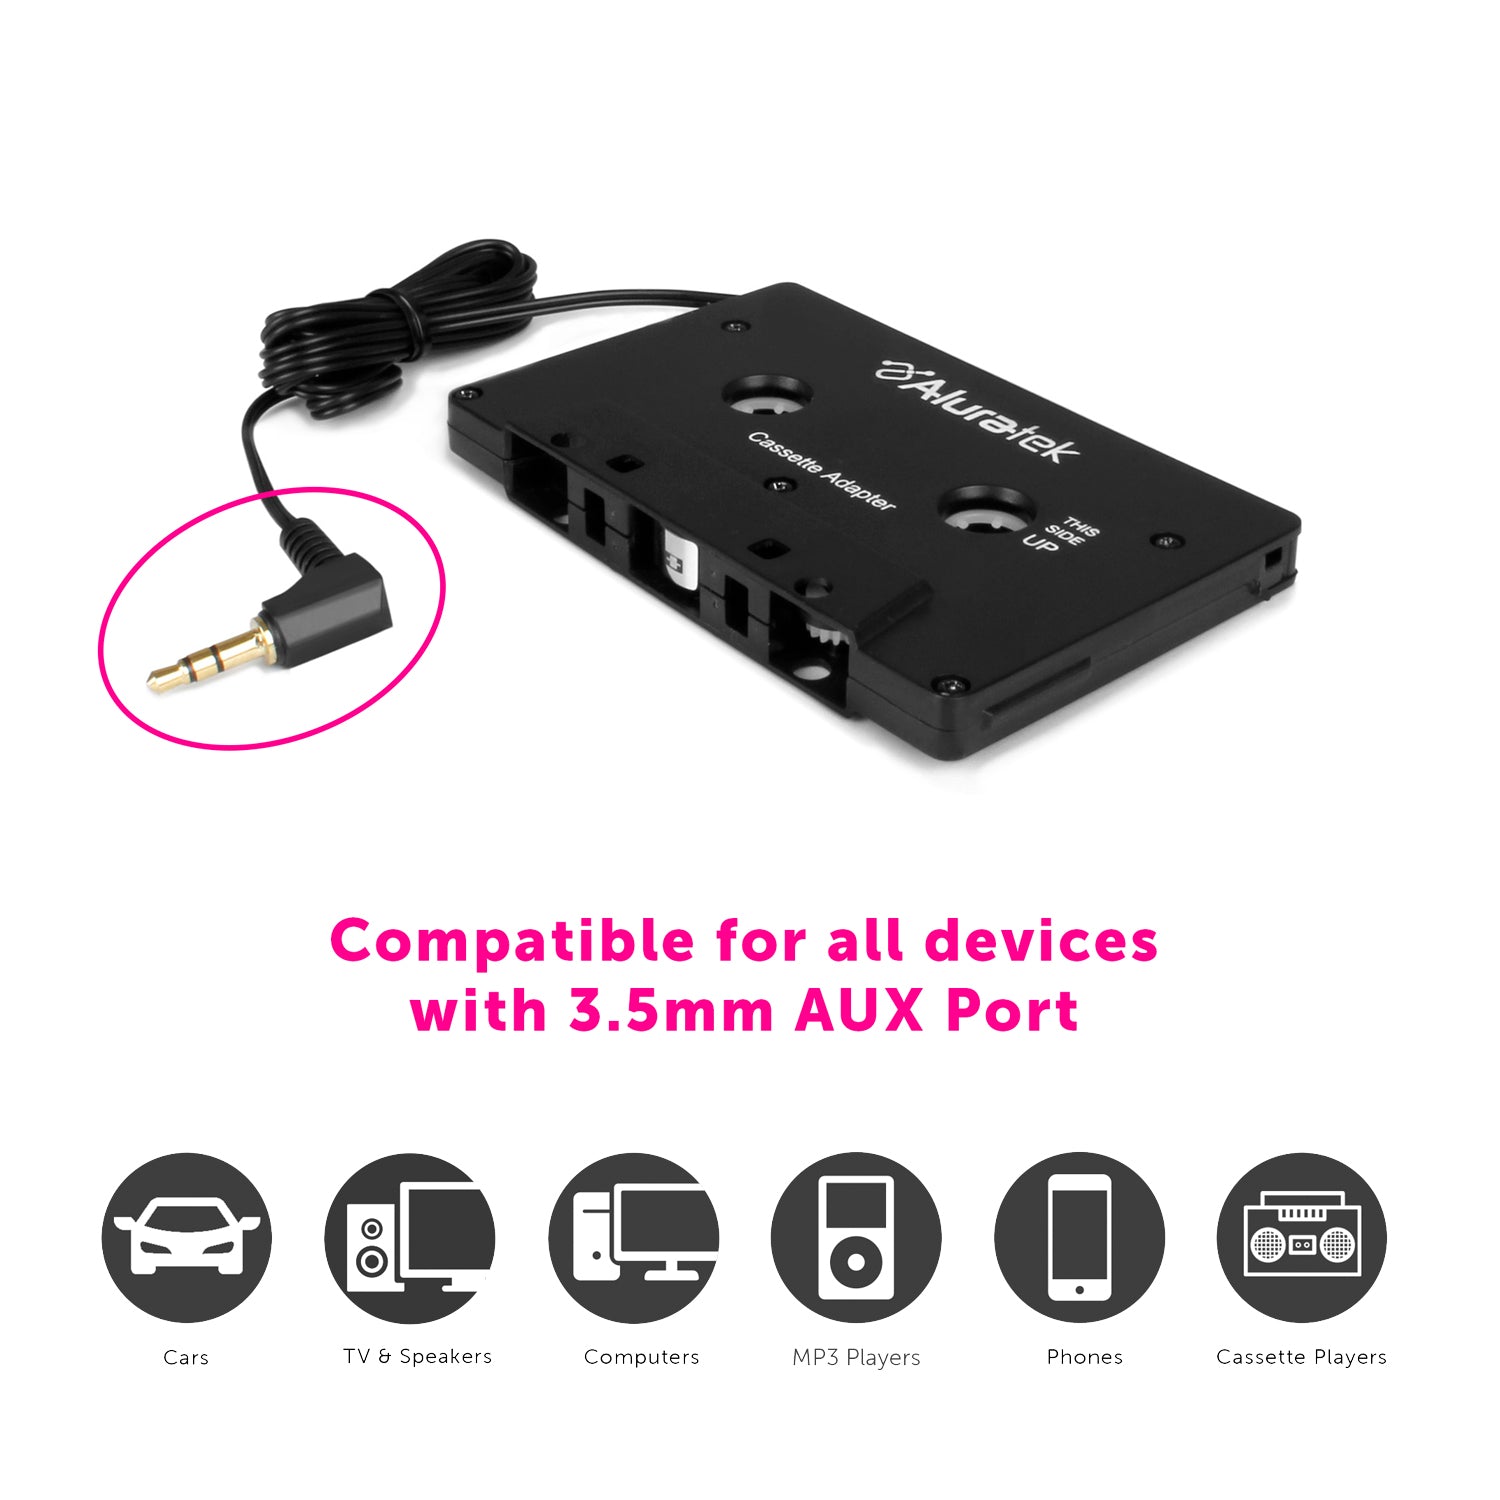 Aluratek ABCT01F Récepteur Cassette Audio Bluetooth Universel : :  High-Tech